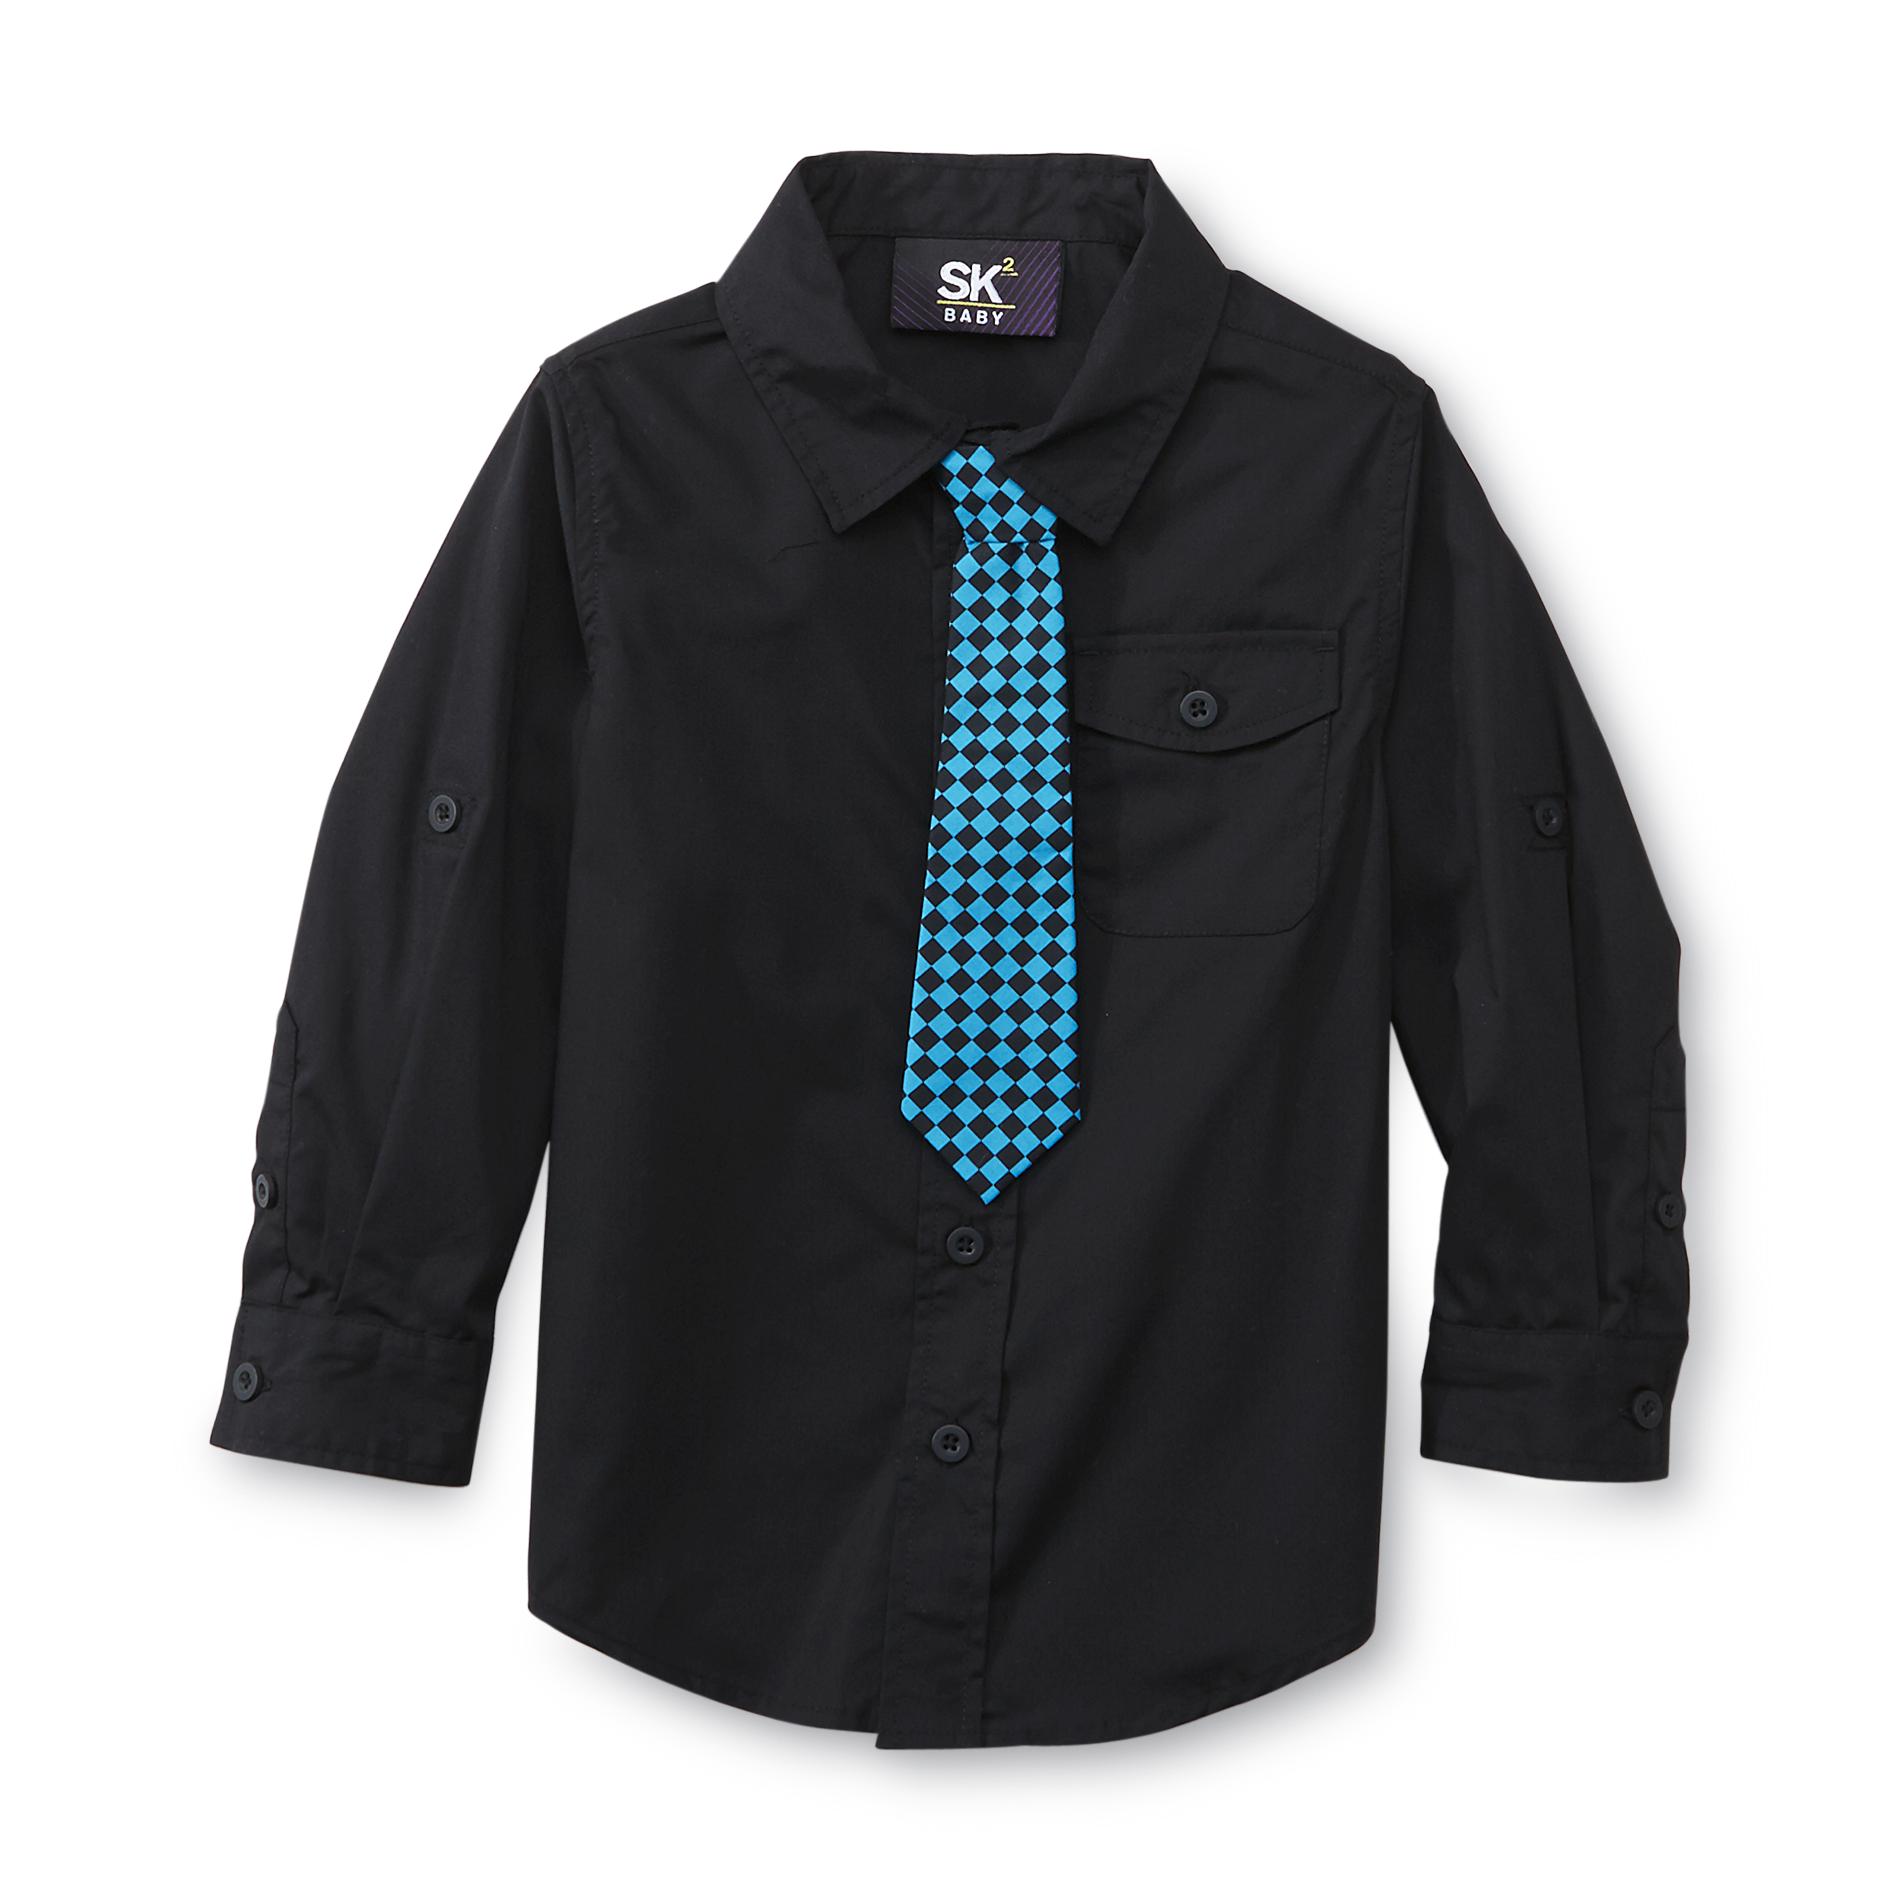 Sk2 Baby Toddler Boy's Shirt & Necktie - Checkered